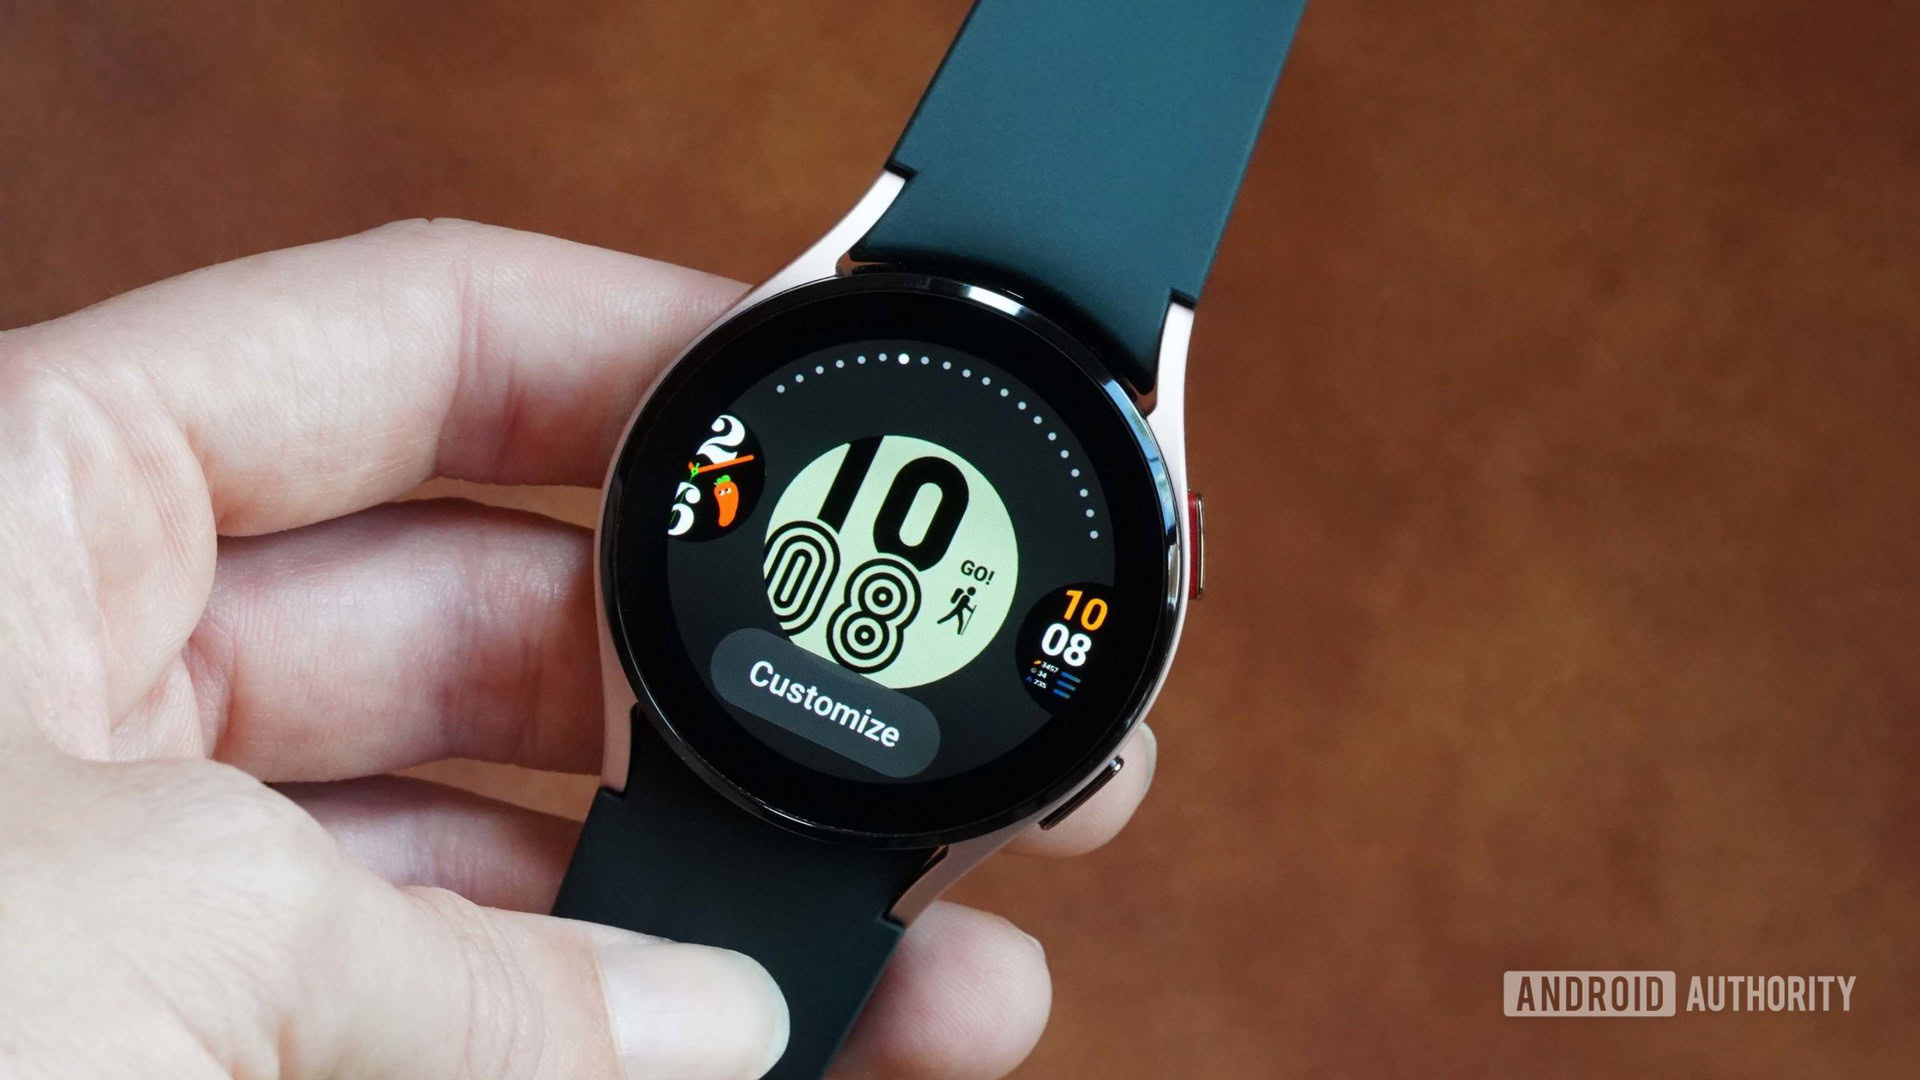 Những mặt đồng hồ Samsung Galaxy Watch tốt nhất cho Galaxy Watch 5, 4, 3 và nhiều hơn - Samsung Galaxy Watch faces. Nếu bạn muốn tạo ra một phong cách hoàn toàn mới cho chiếc đồng hồ thông minh của mình, đừng bỏ lỡ những mặt đồng hồ này. Với nhiều lựa chọn đa dạng và độc đáo, bạn chắc chắn sẽ tìm thấy một mặt đồng hồ phù hợp với sở thích của mình.